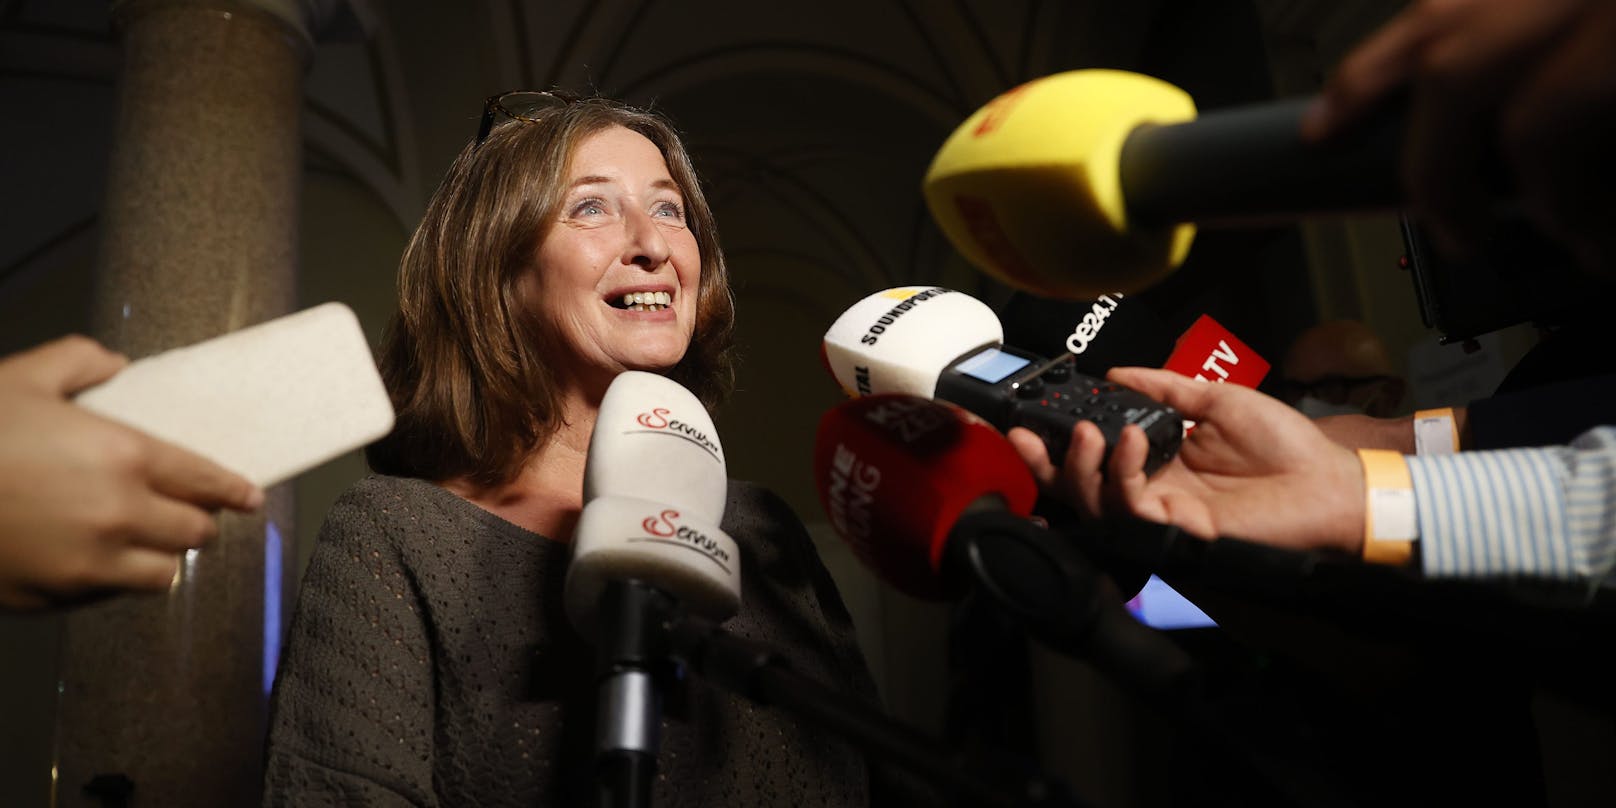 Ziemlich sicher die nächste Bürgermeisterin von Graz: Elke Kahr von der KPÖ.